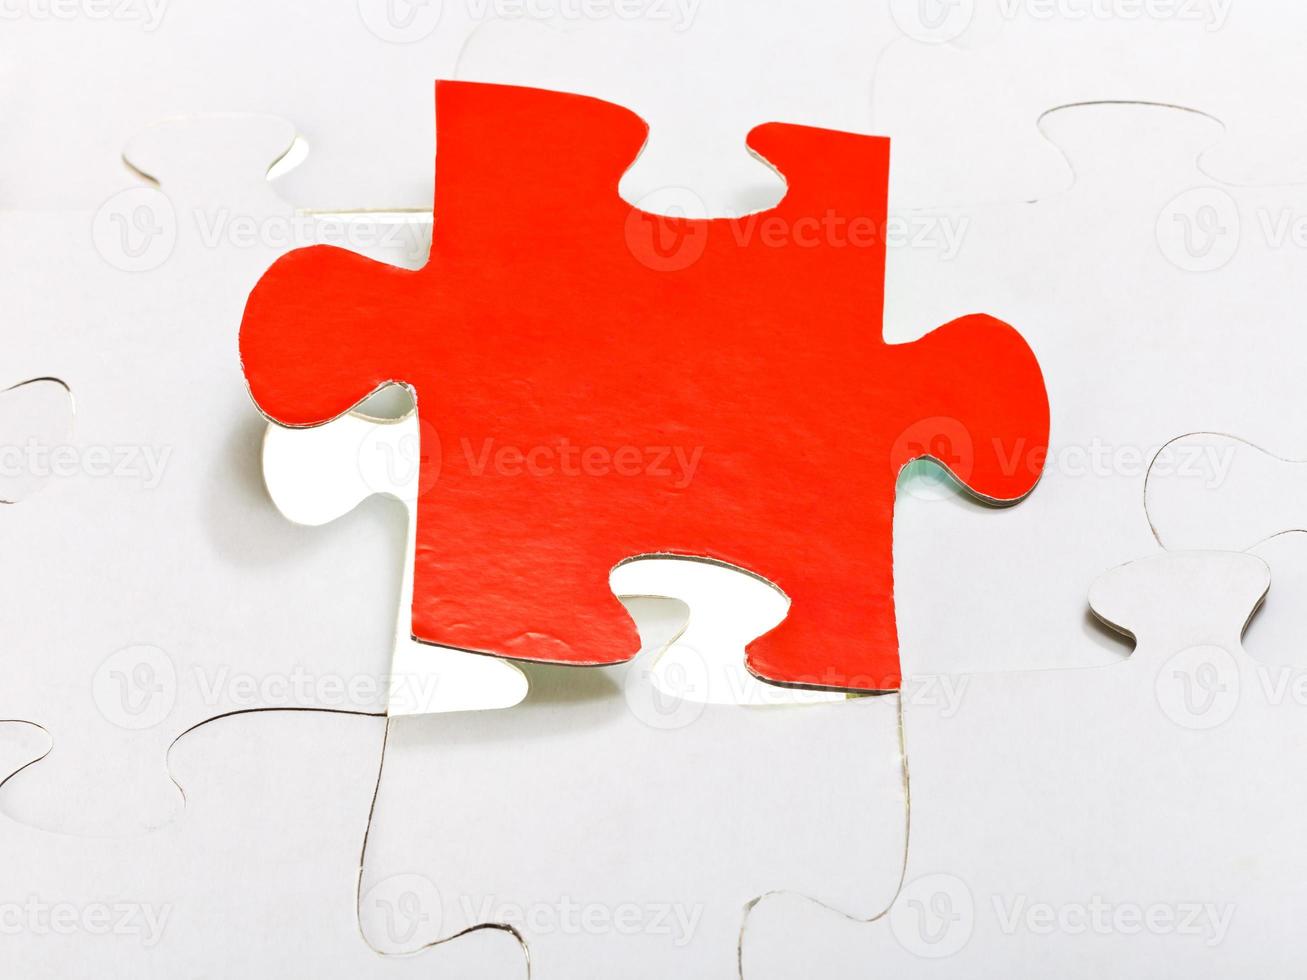 pièce rouge attachée dans des puzzles assemblés photo